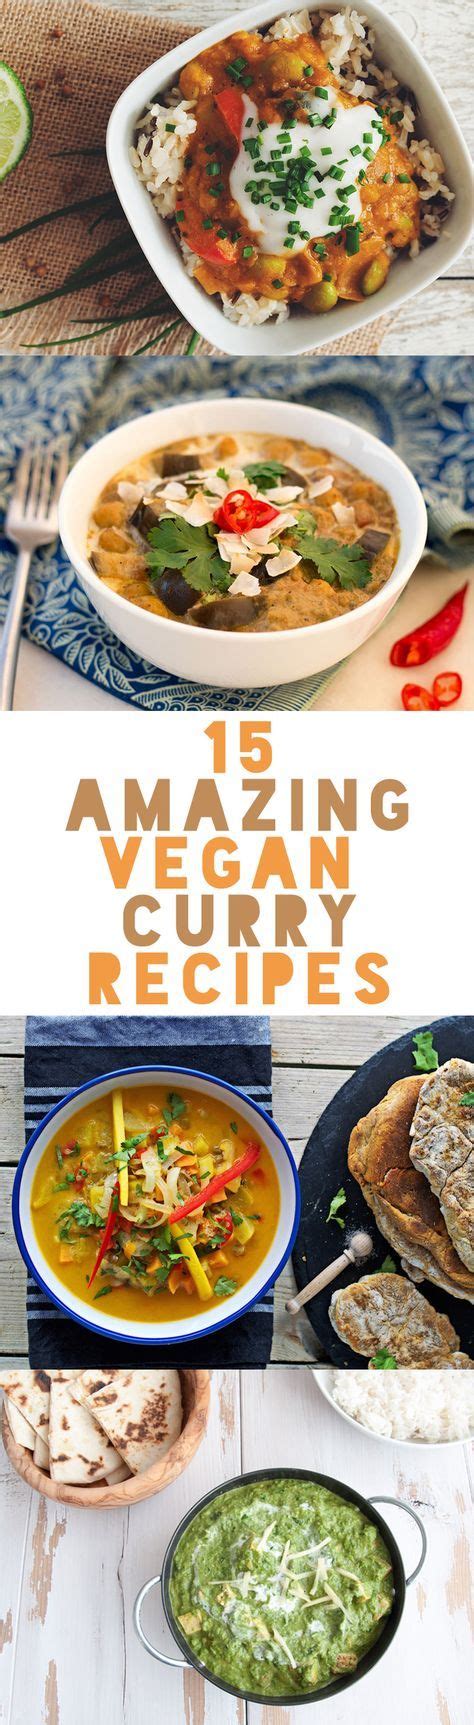 15 Amazing Vegan Curry Recipes Vegetarian